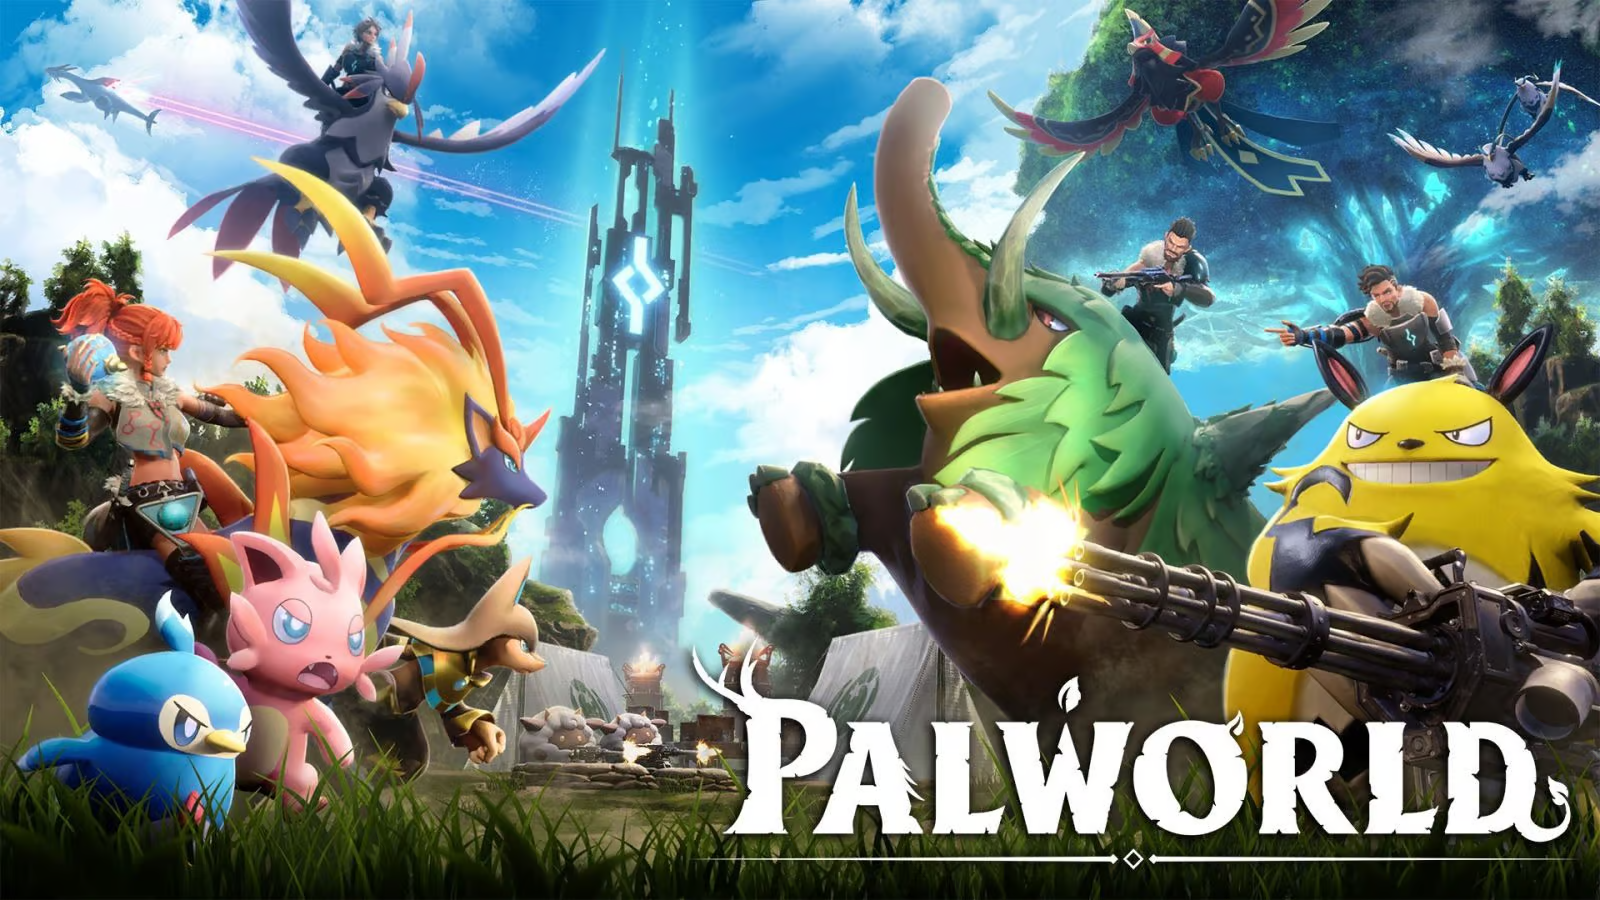 Les développeurs de Palworld assurent que leur jeu n'est pas une arnaque comme The Day Before.